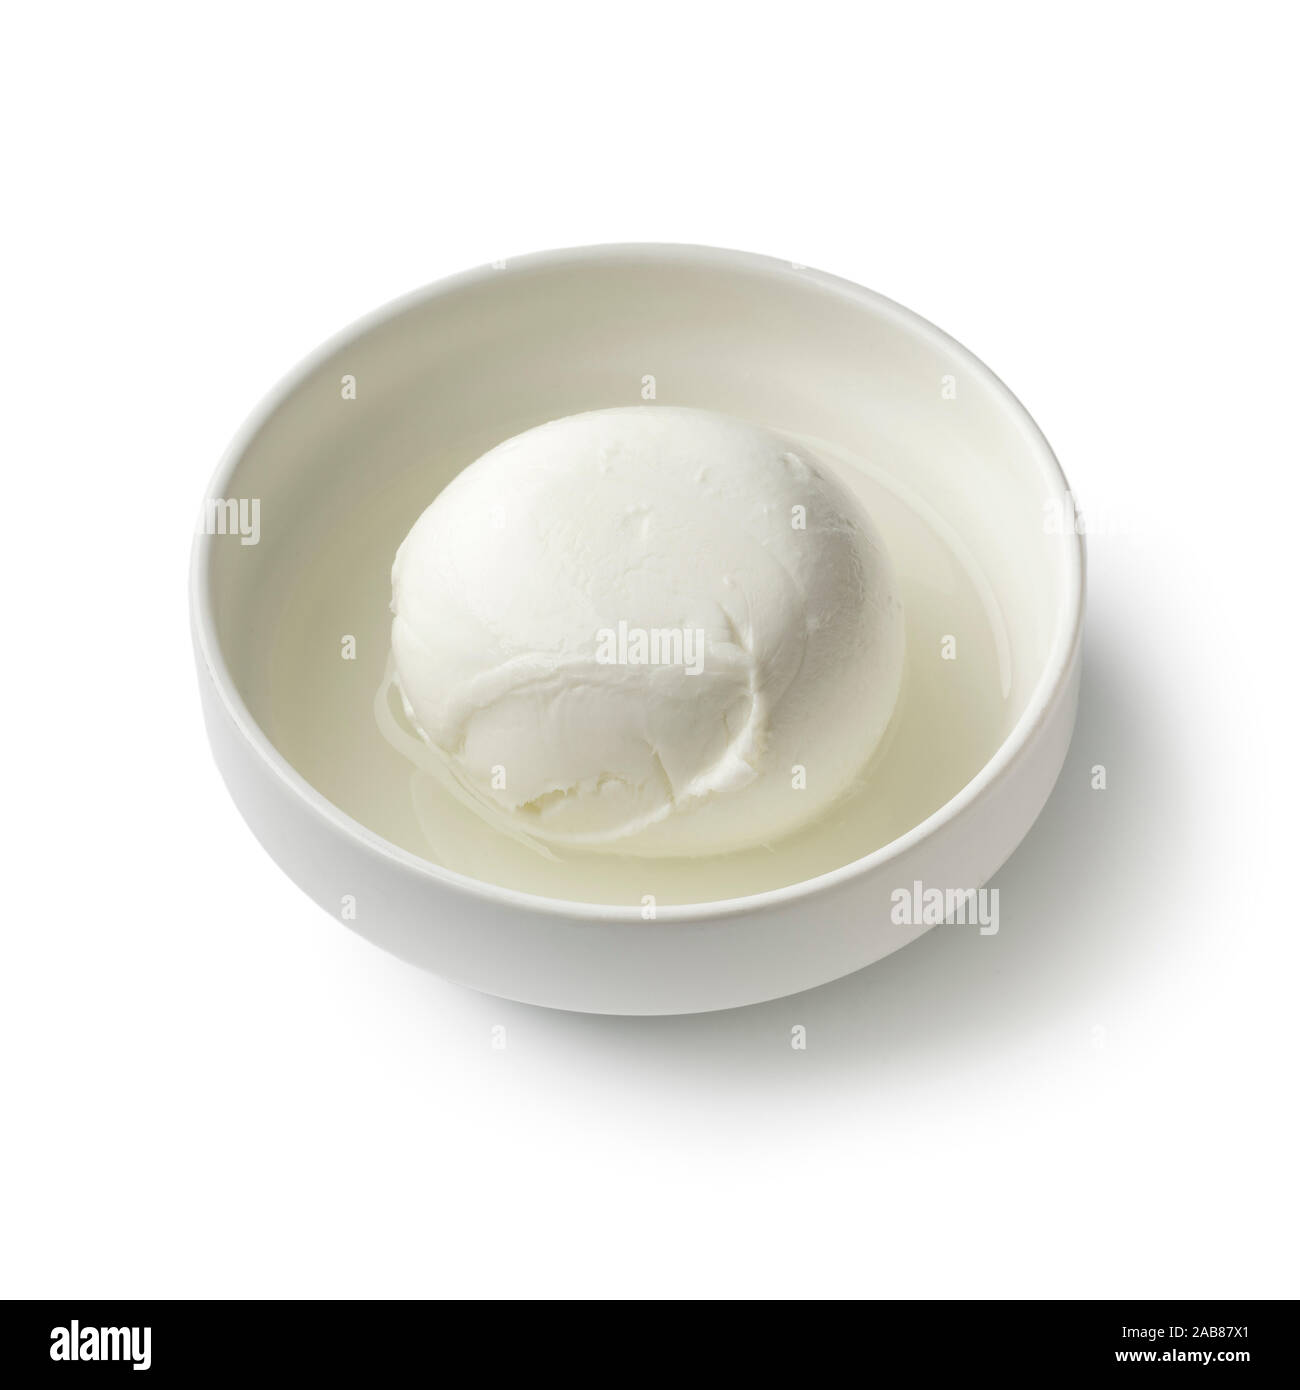 Fromage Mozzarella Italien blanc frais dans un bol avec de l'eau close up isolé sur fond blanc Banque D'Images